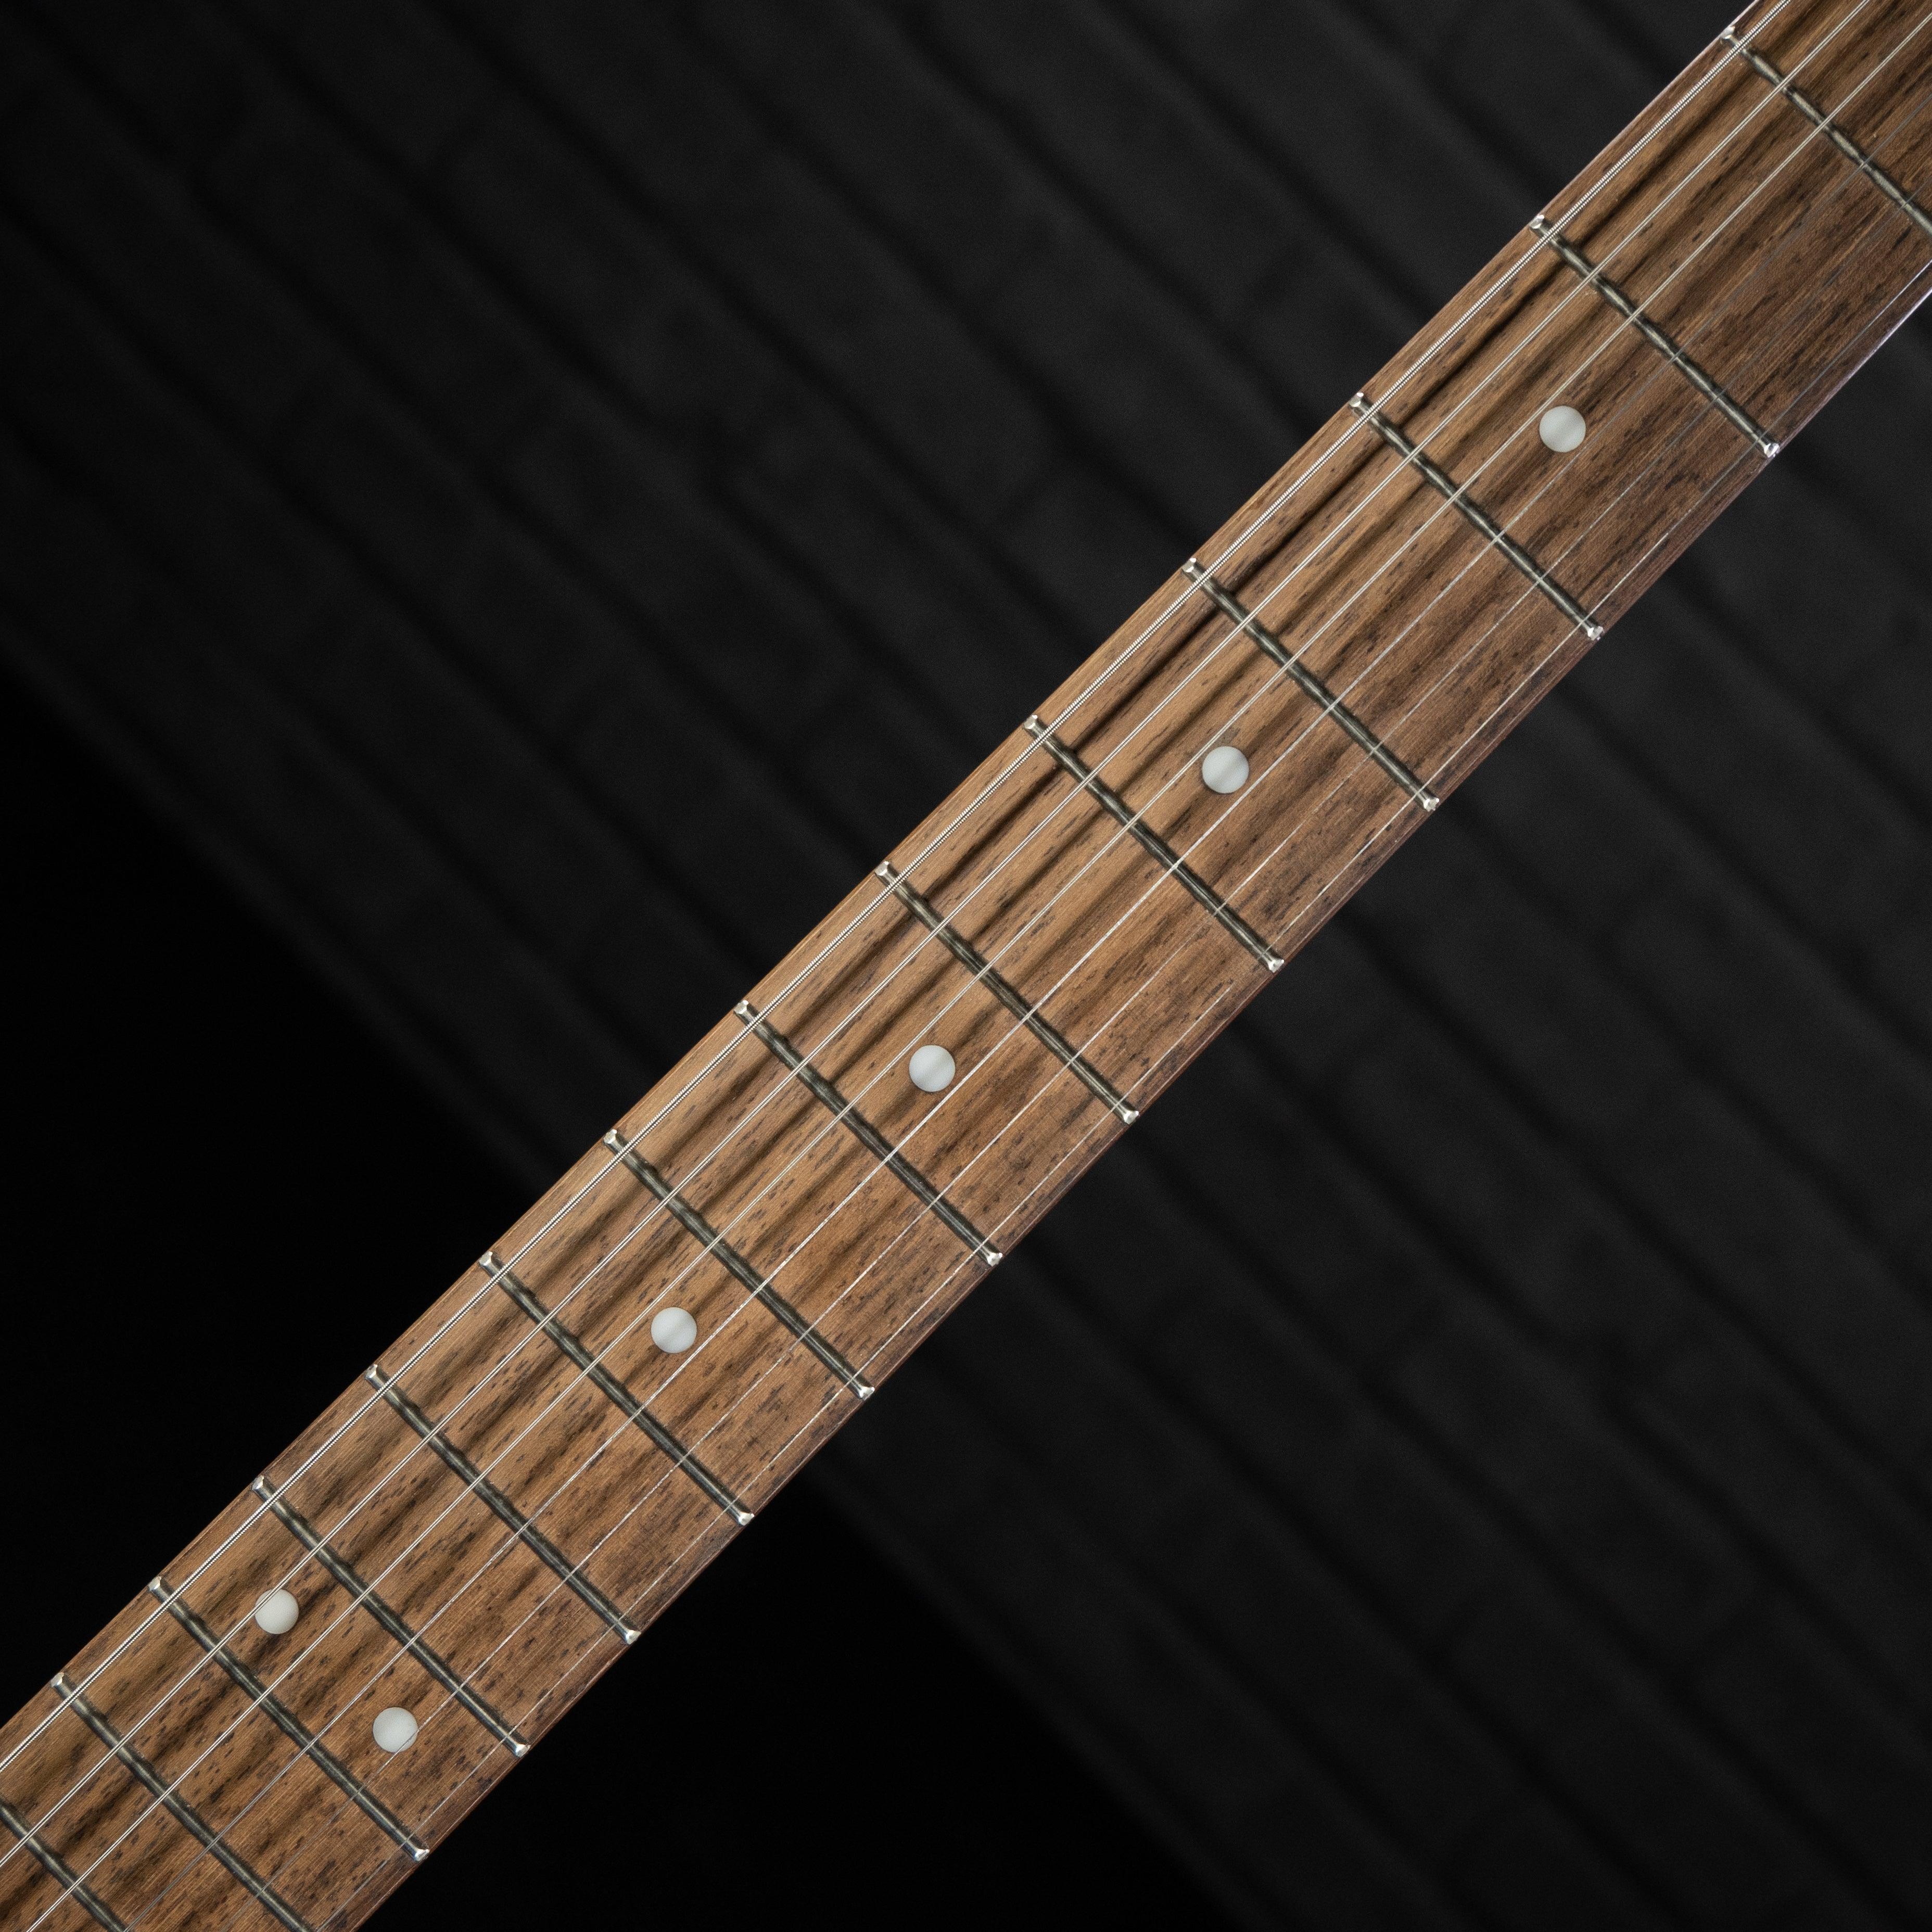 Fender Squier Bullet Stratocaster White - Impulse Music Co.